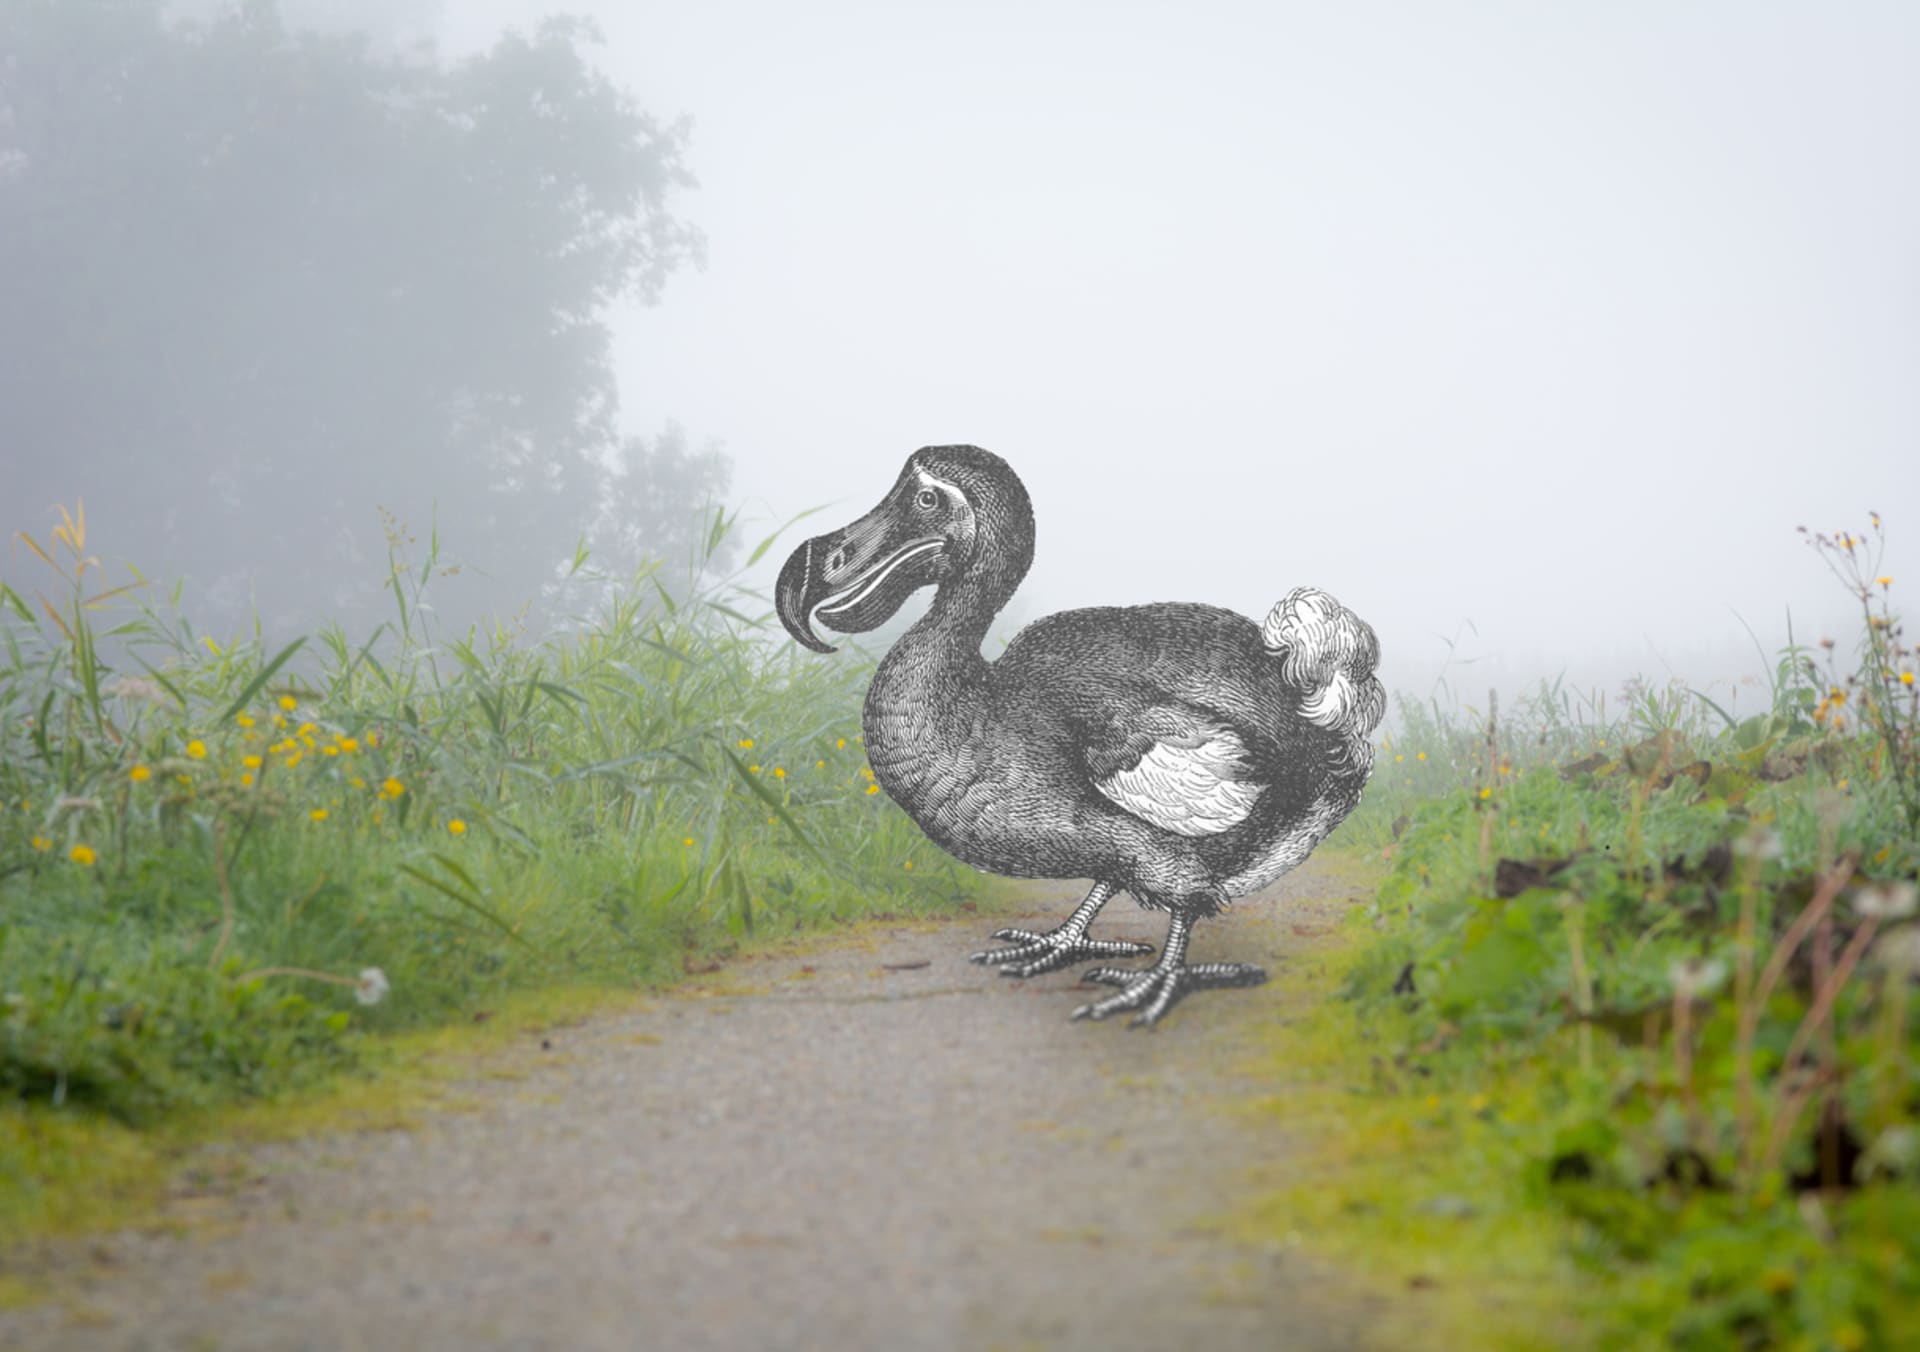 Dronte mauricijský neboli blboun nejapný či dodo